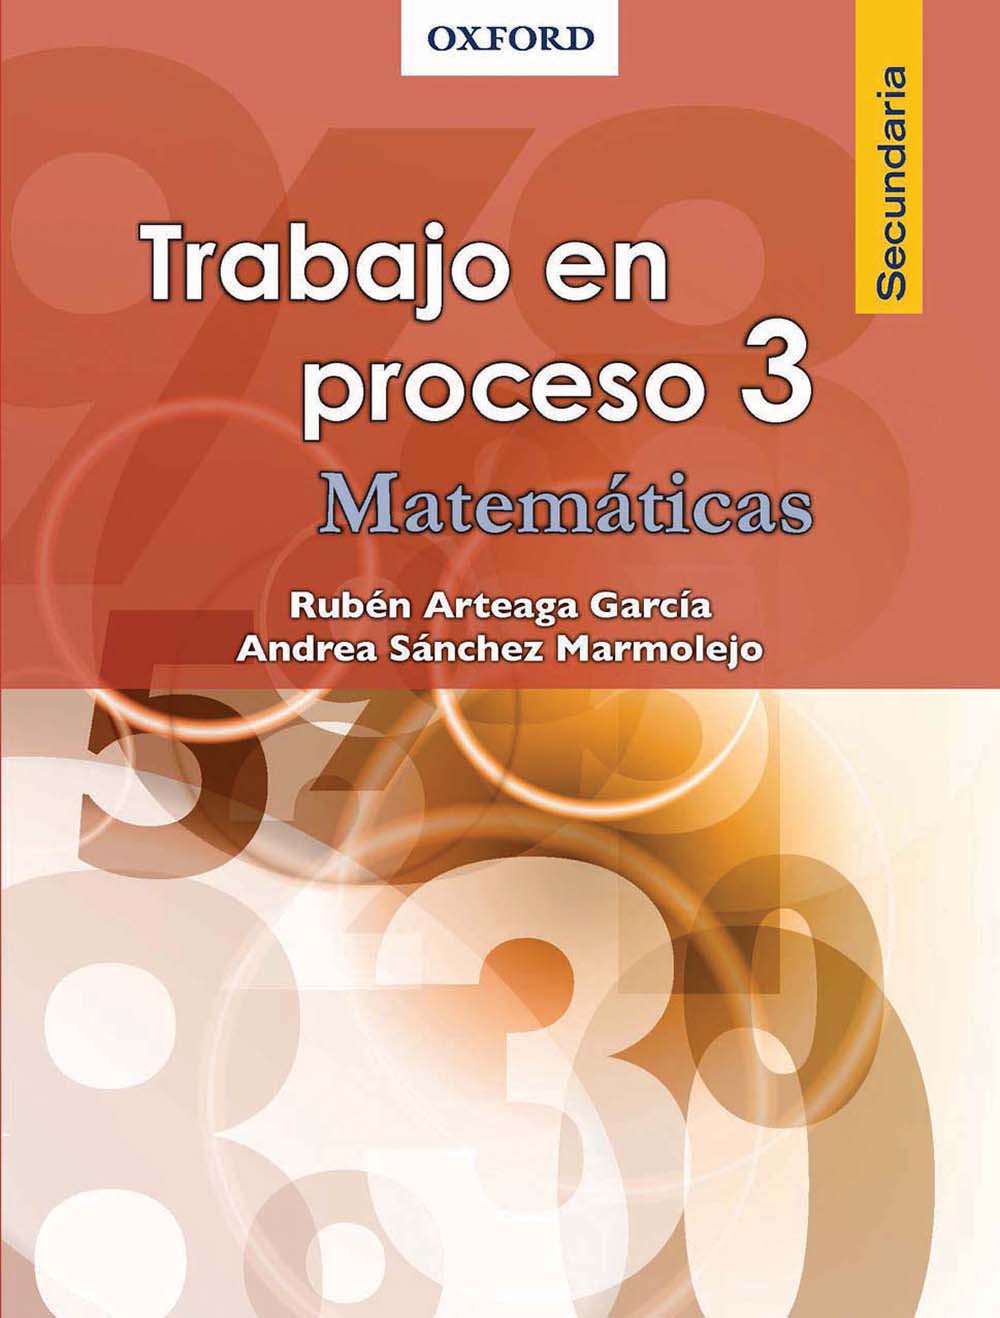 Trabajo en proceso 3. Matemáticas, Editorial: Oxford University Press, Nivel: Secundaria, Grado: 3